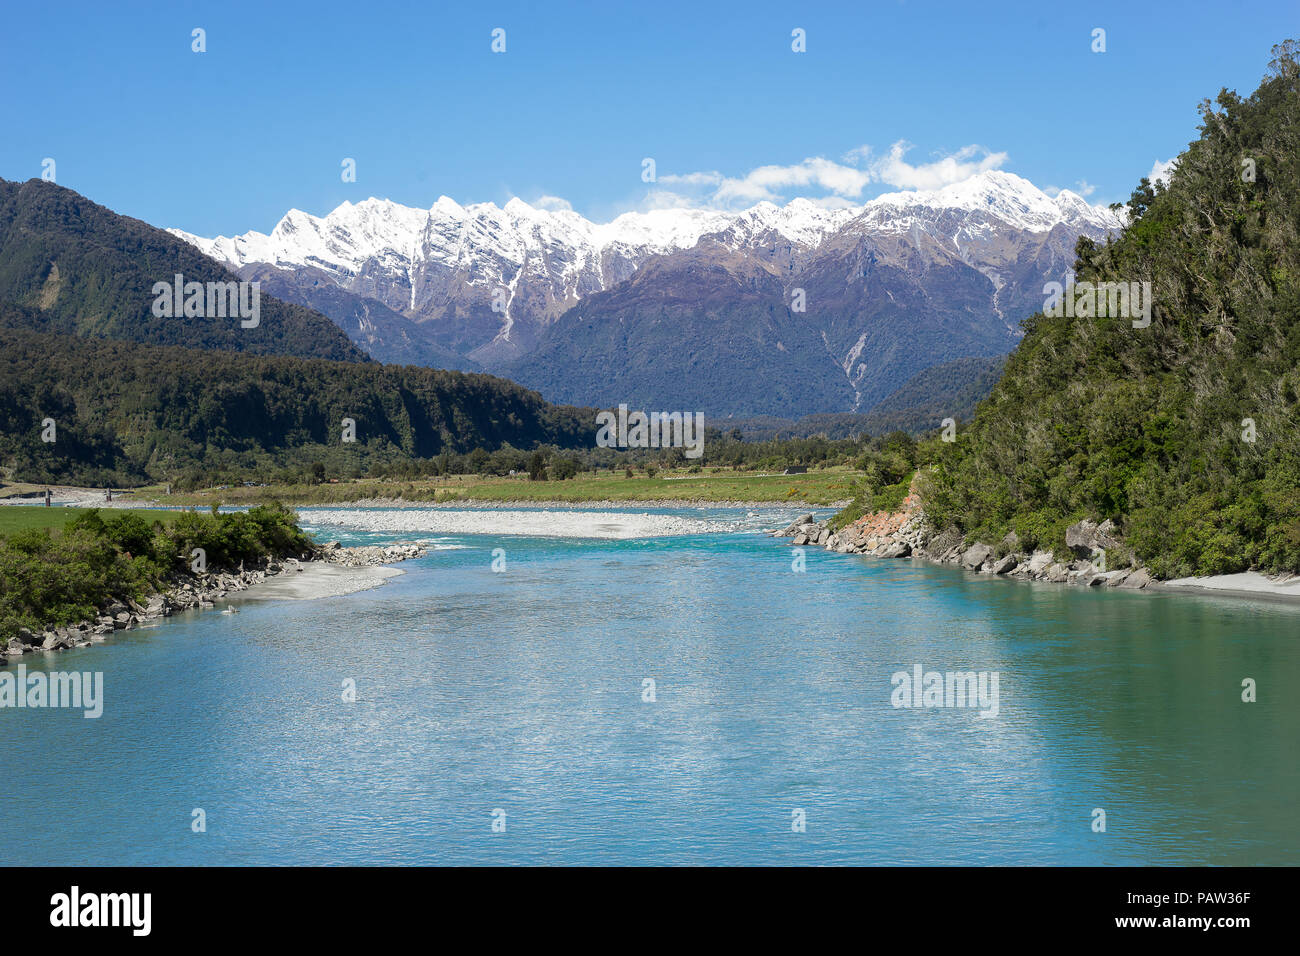 Nuova Zelanda paesaggi, montagne con la neve sulla sommità con turchesi riverfront nella foresta e cielo blu in background Foto Stock